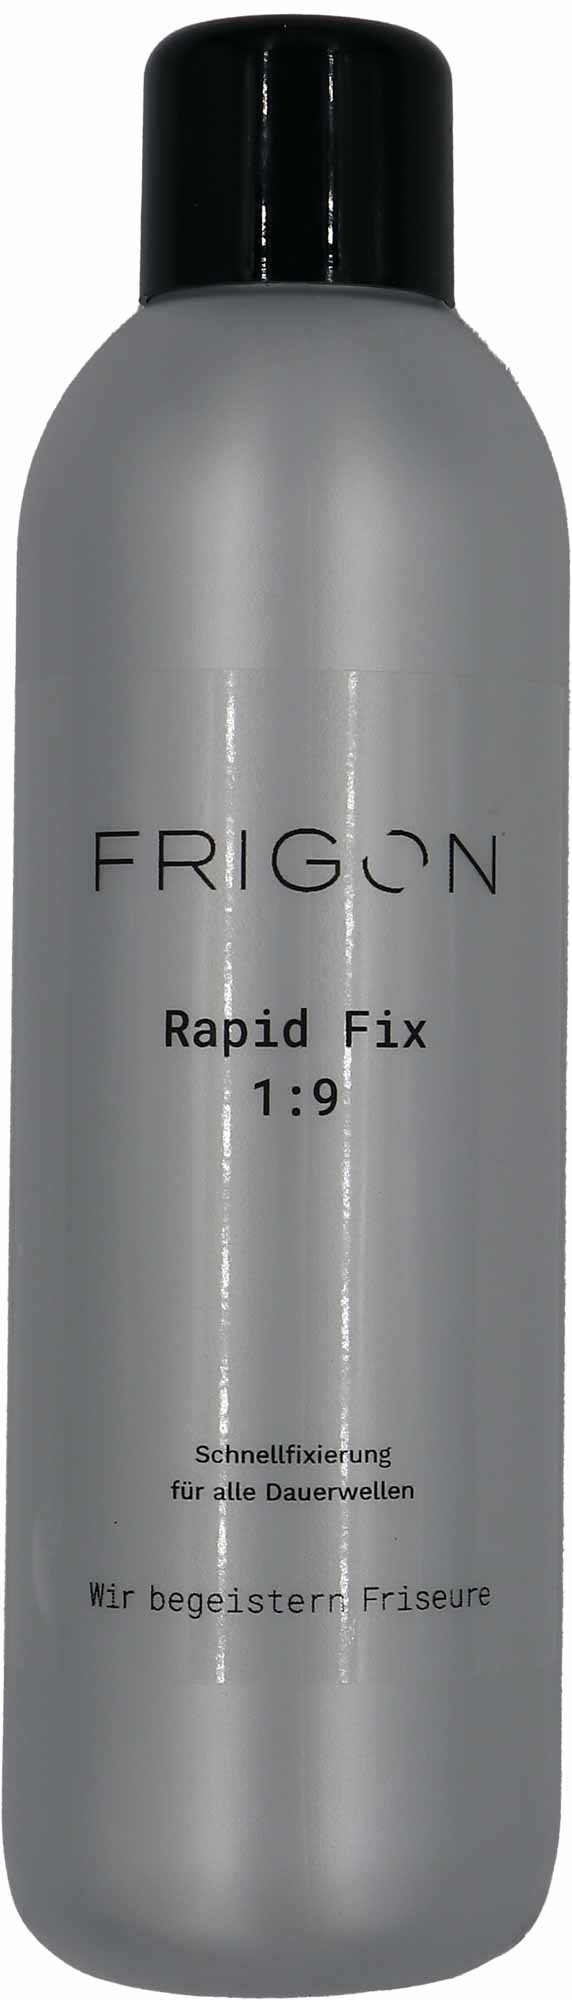 Frigon Rapid Fix 1:9 1L